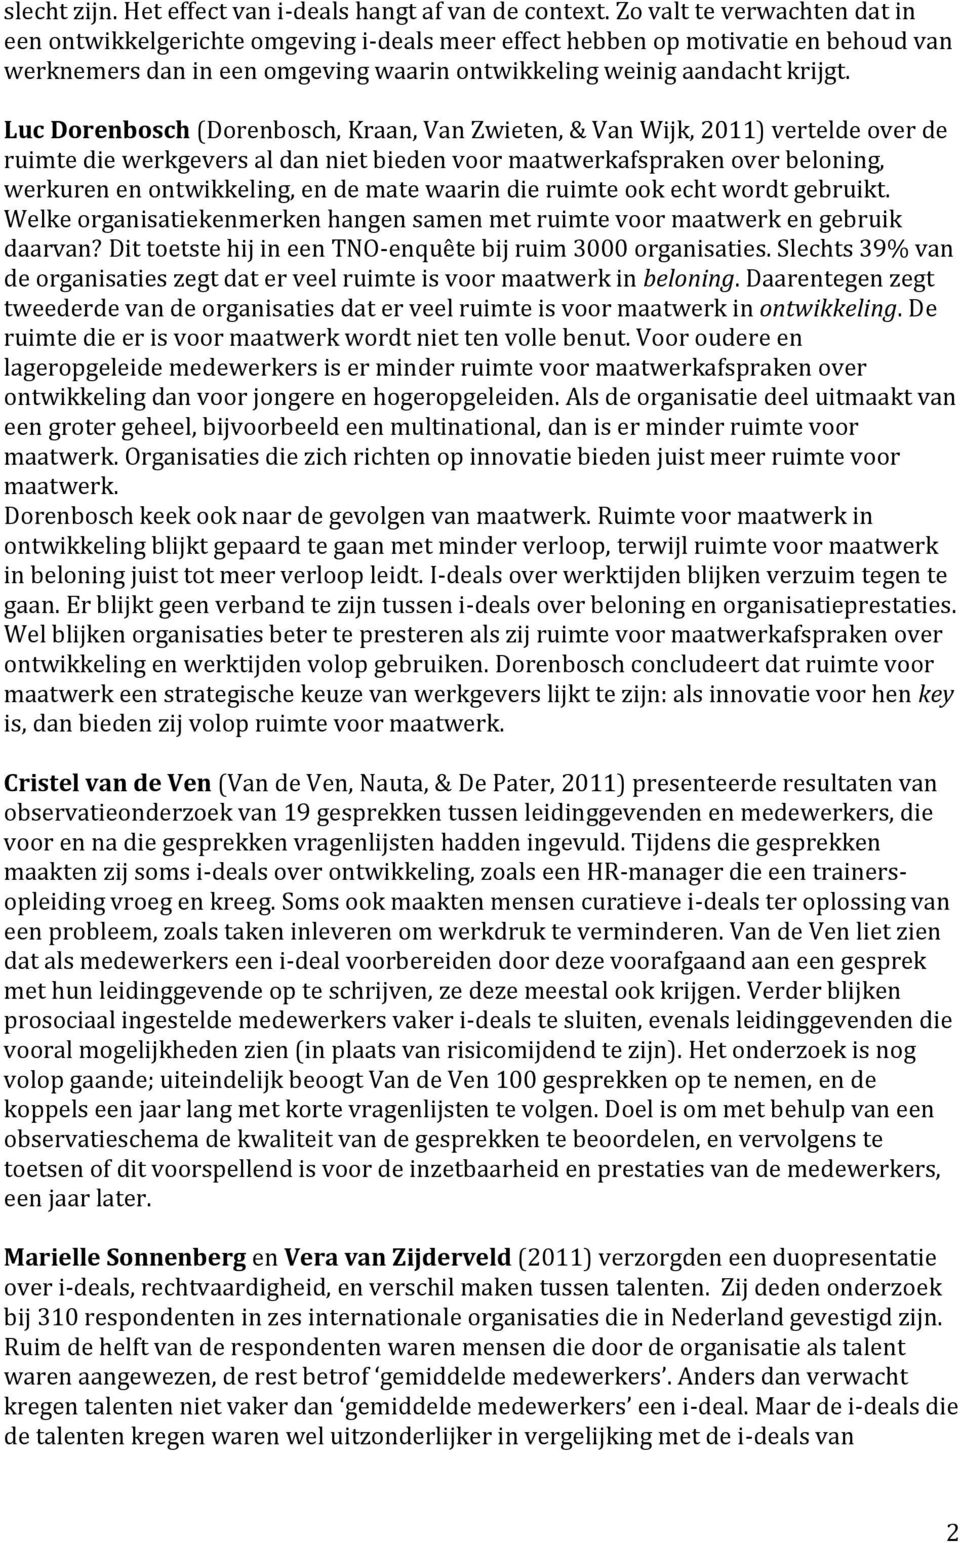 Luc Dorenbosch (Dorenbosch, Kraan, Van Zwieten, & Van Wijk, 2011) vertelde over de ruimte die werkgevers al dan niet bieden voor maatwerkafspraken over beloning, werkuren en ontwikkeling, en de mate